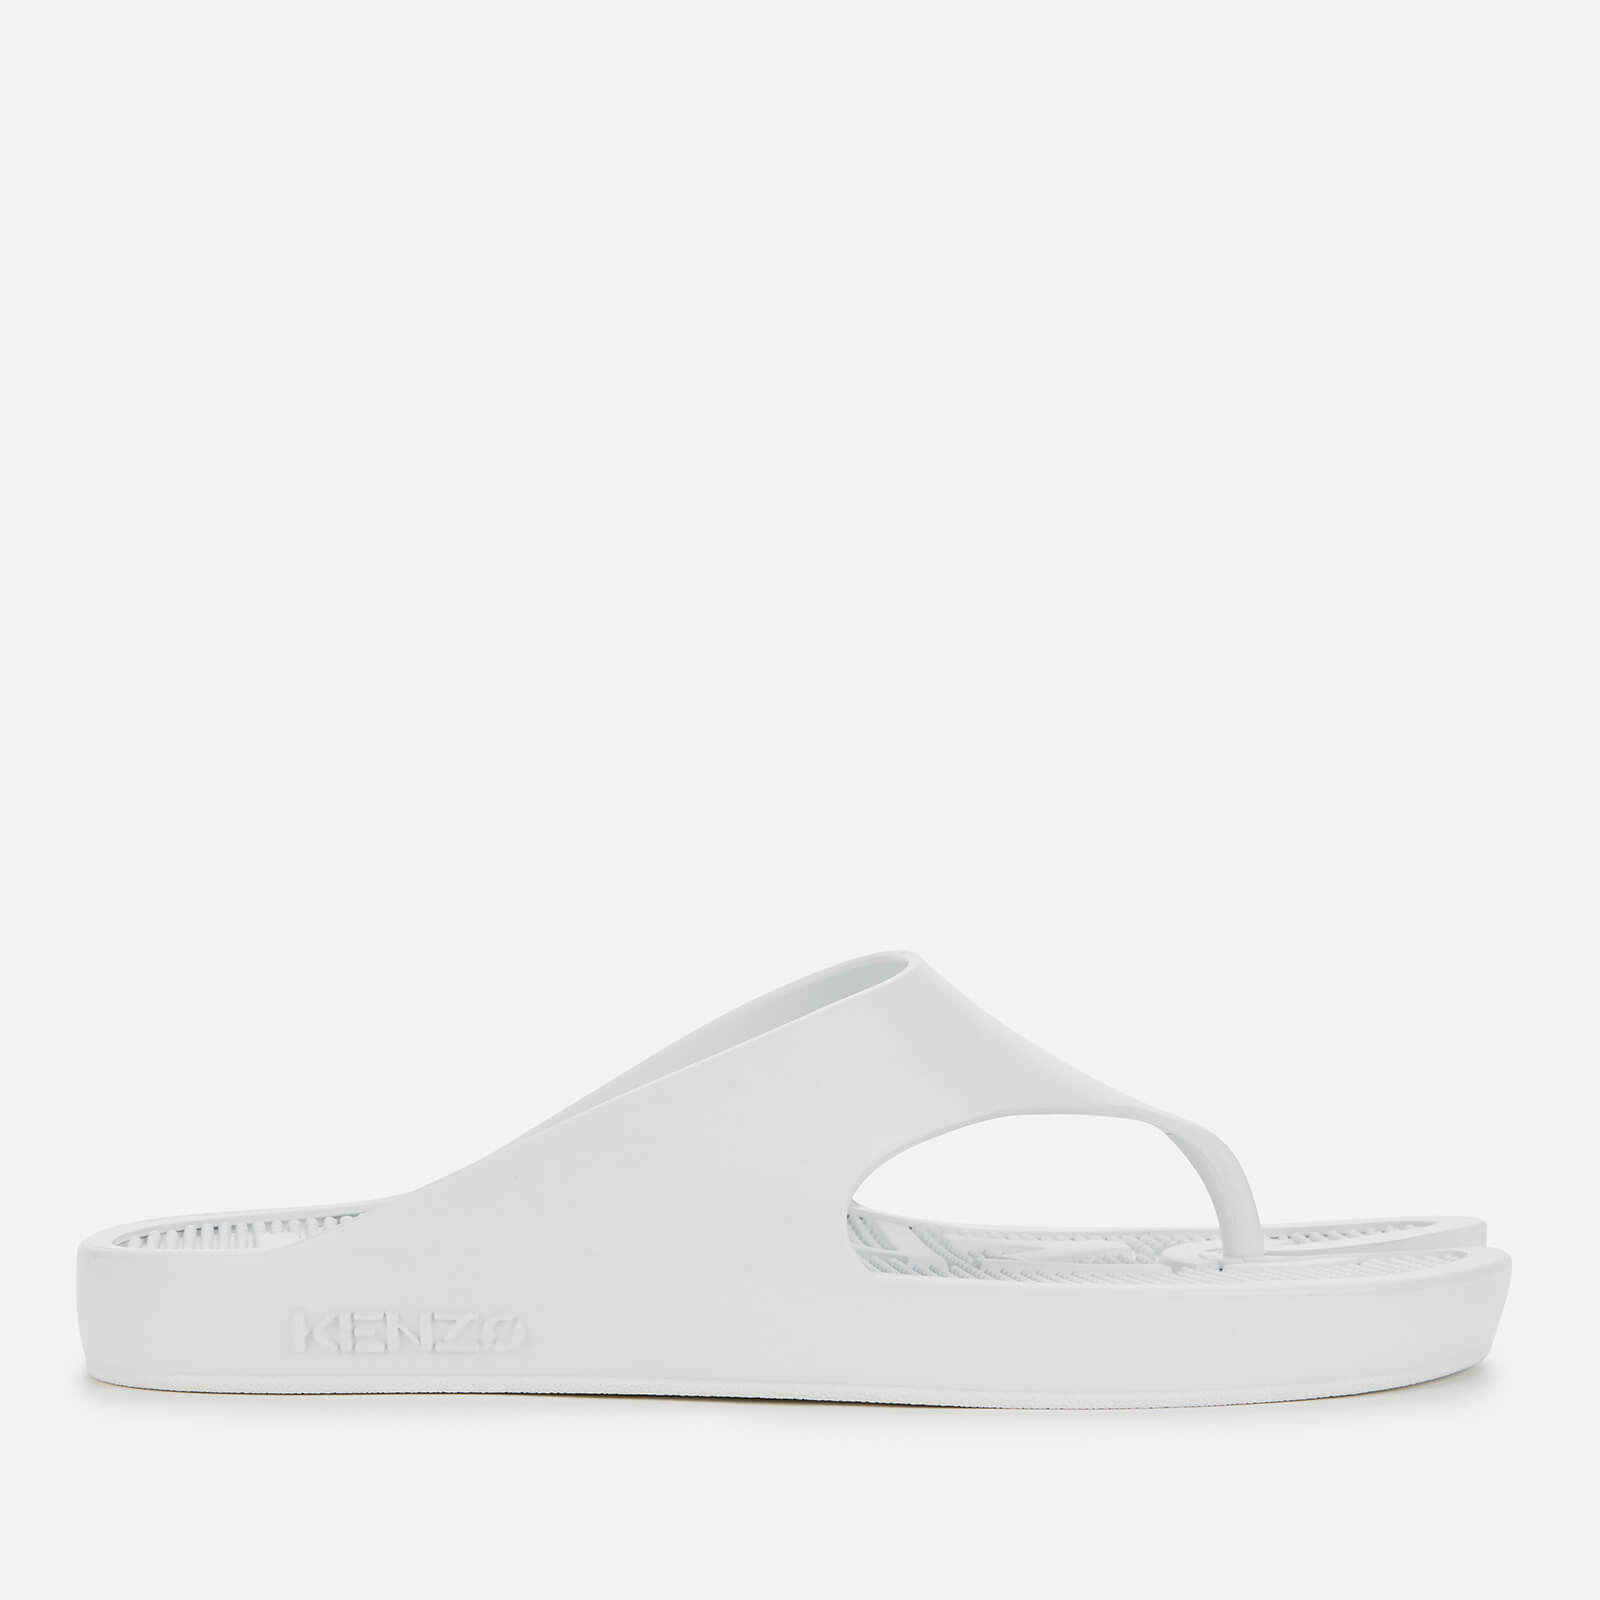 KENZO Women's New Flip Flops - White - UK 3